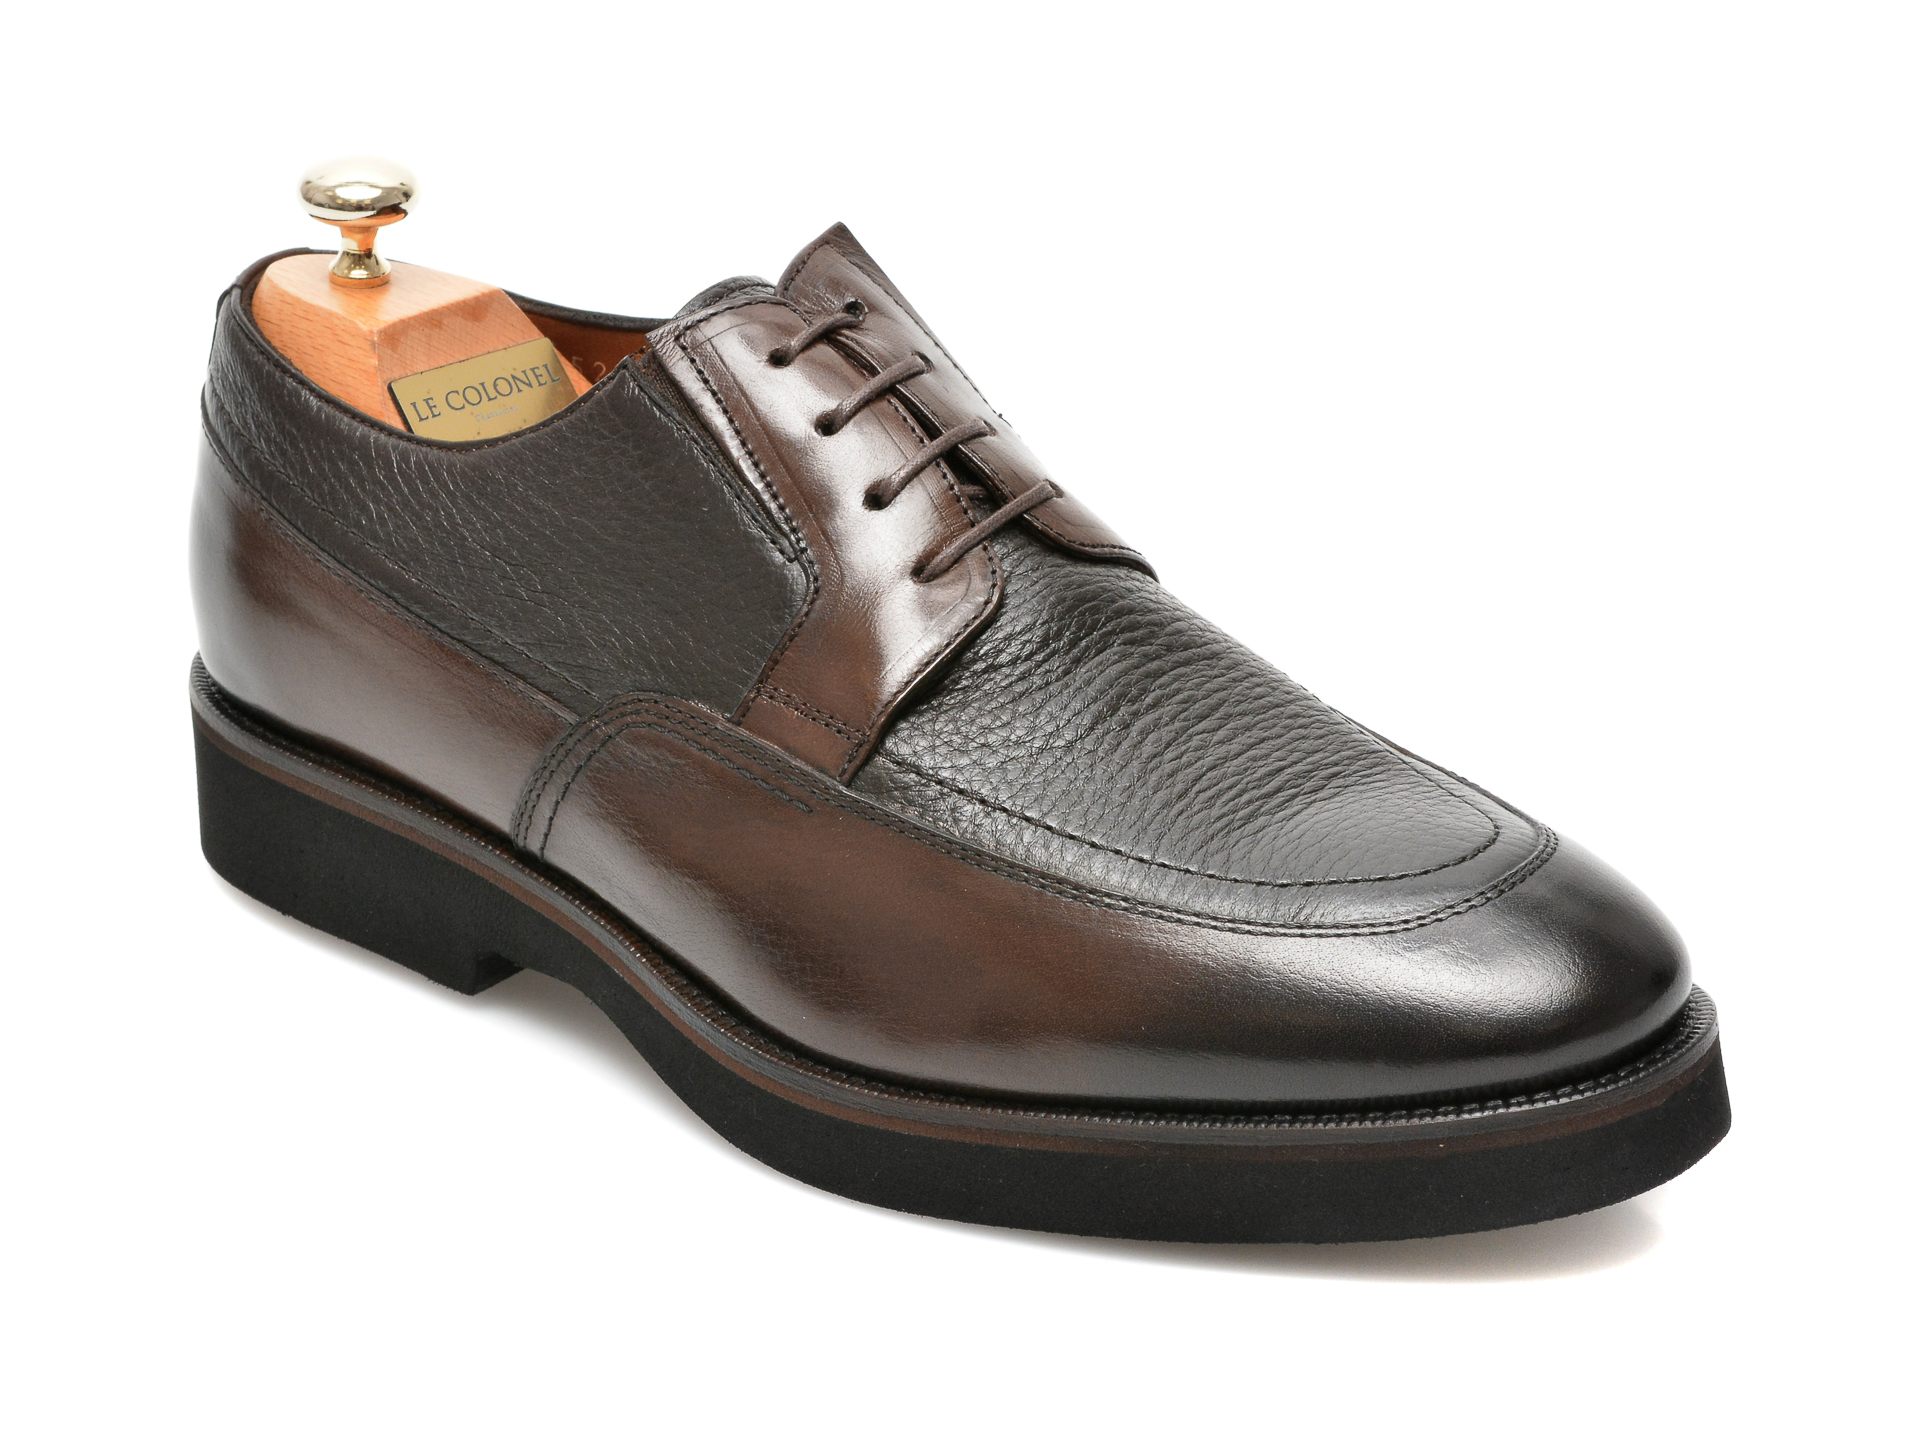 Pantofi LE COLONEL maro, 43452, din piele naturala Le Colonel imagine 2022 13clothing.ro